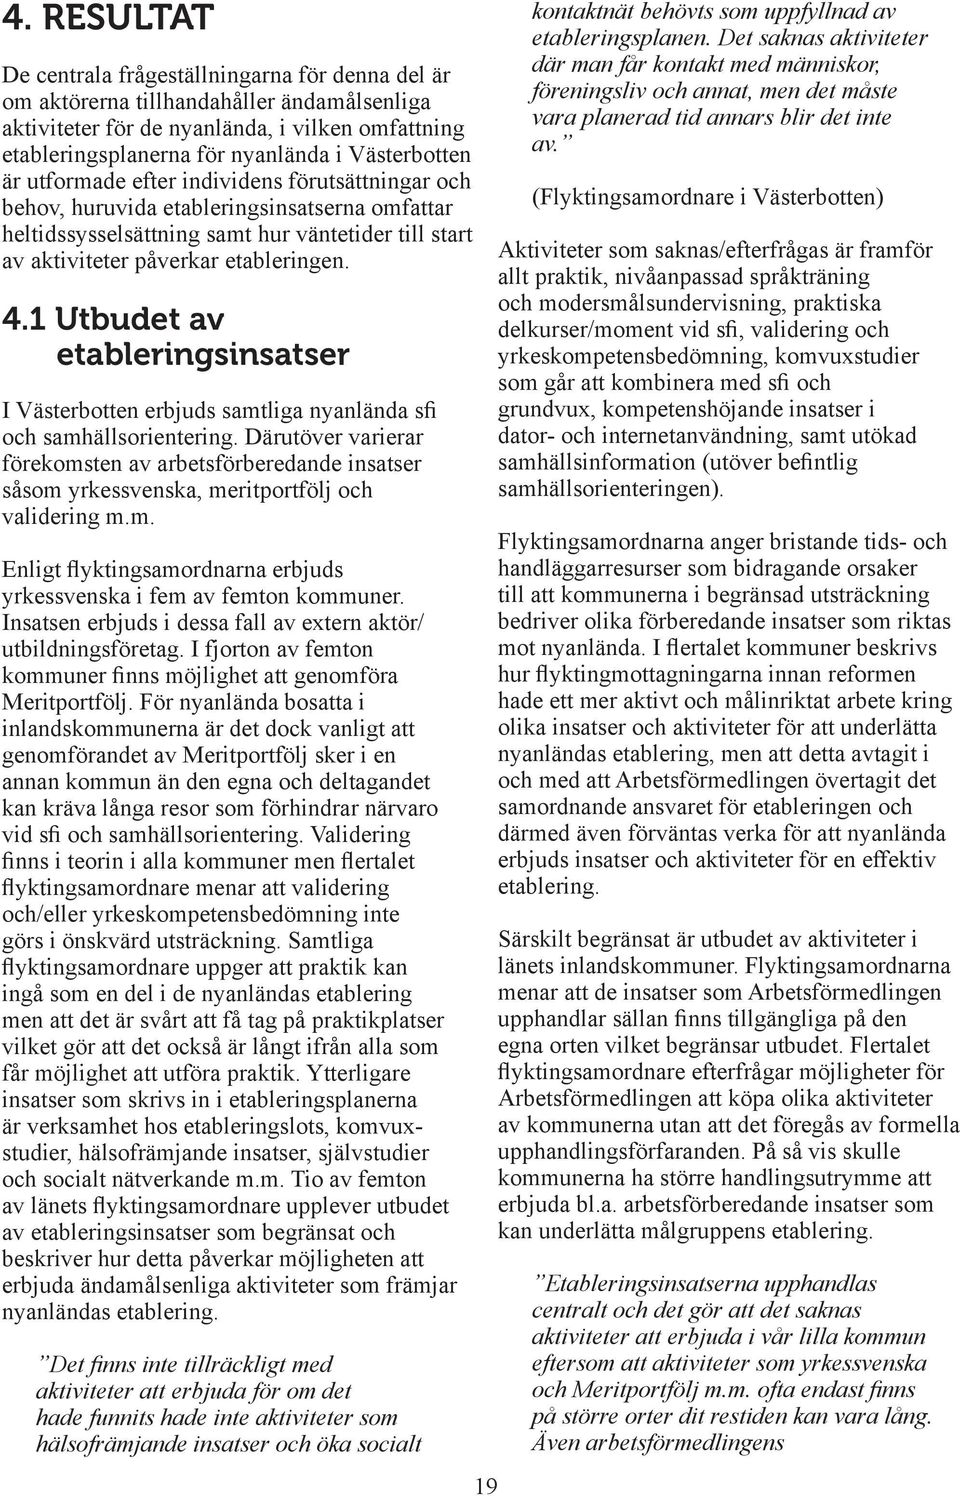 4.1 Utbudet av etableringsinsatser I Västerbotten erbjuds samtliga nyanlända sfi och samhällsorientering.